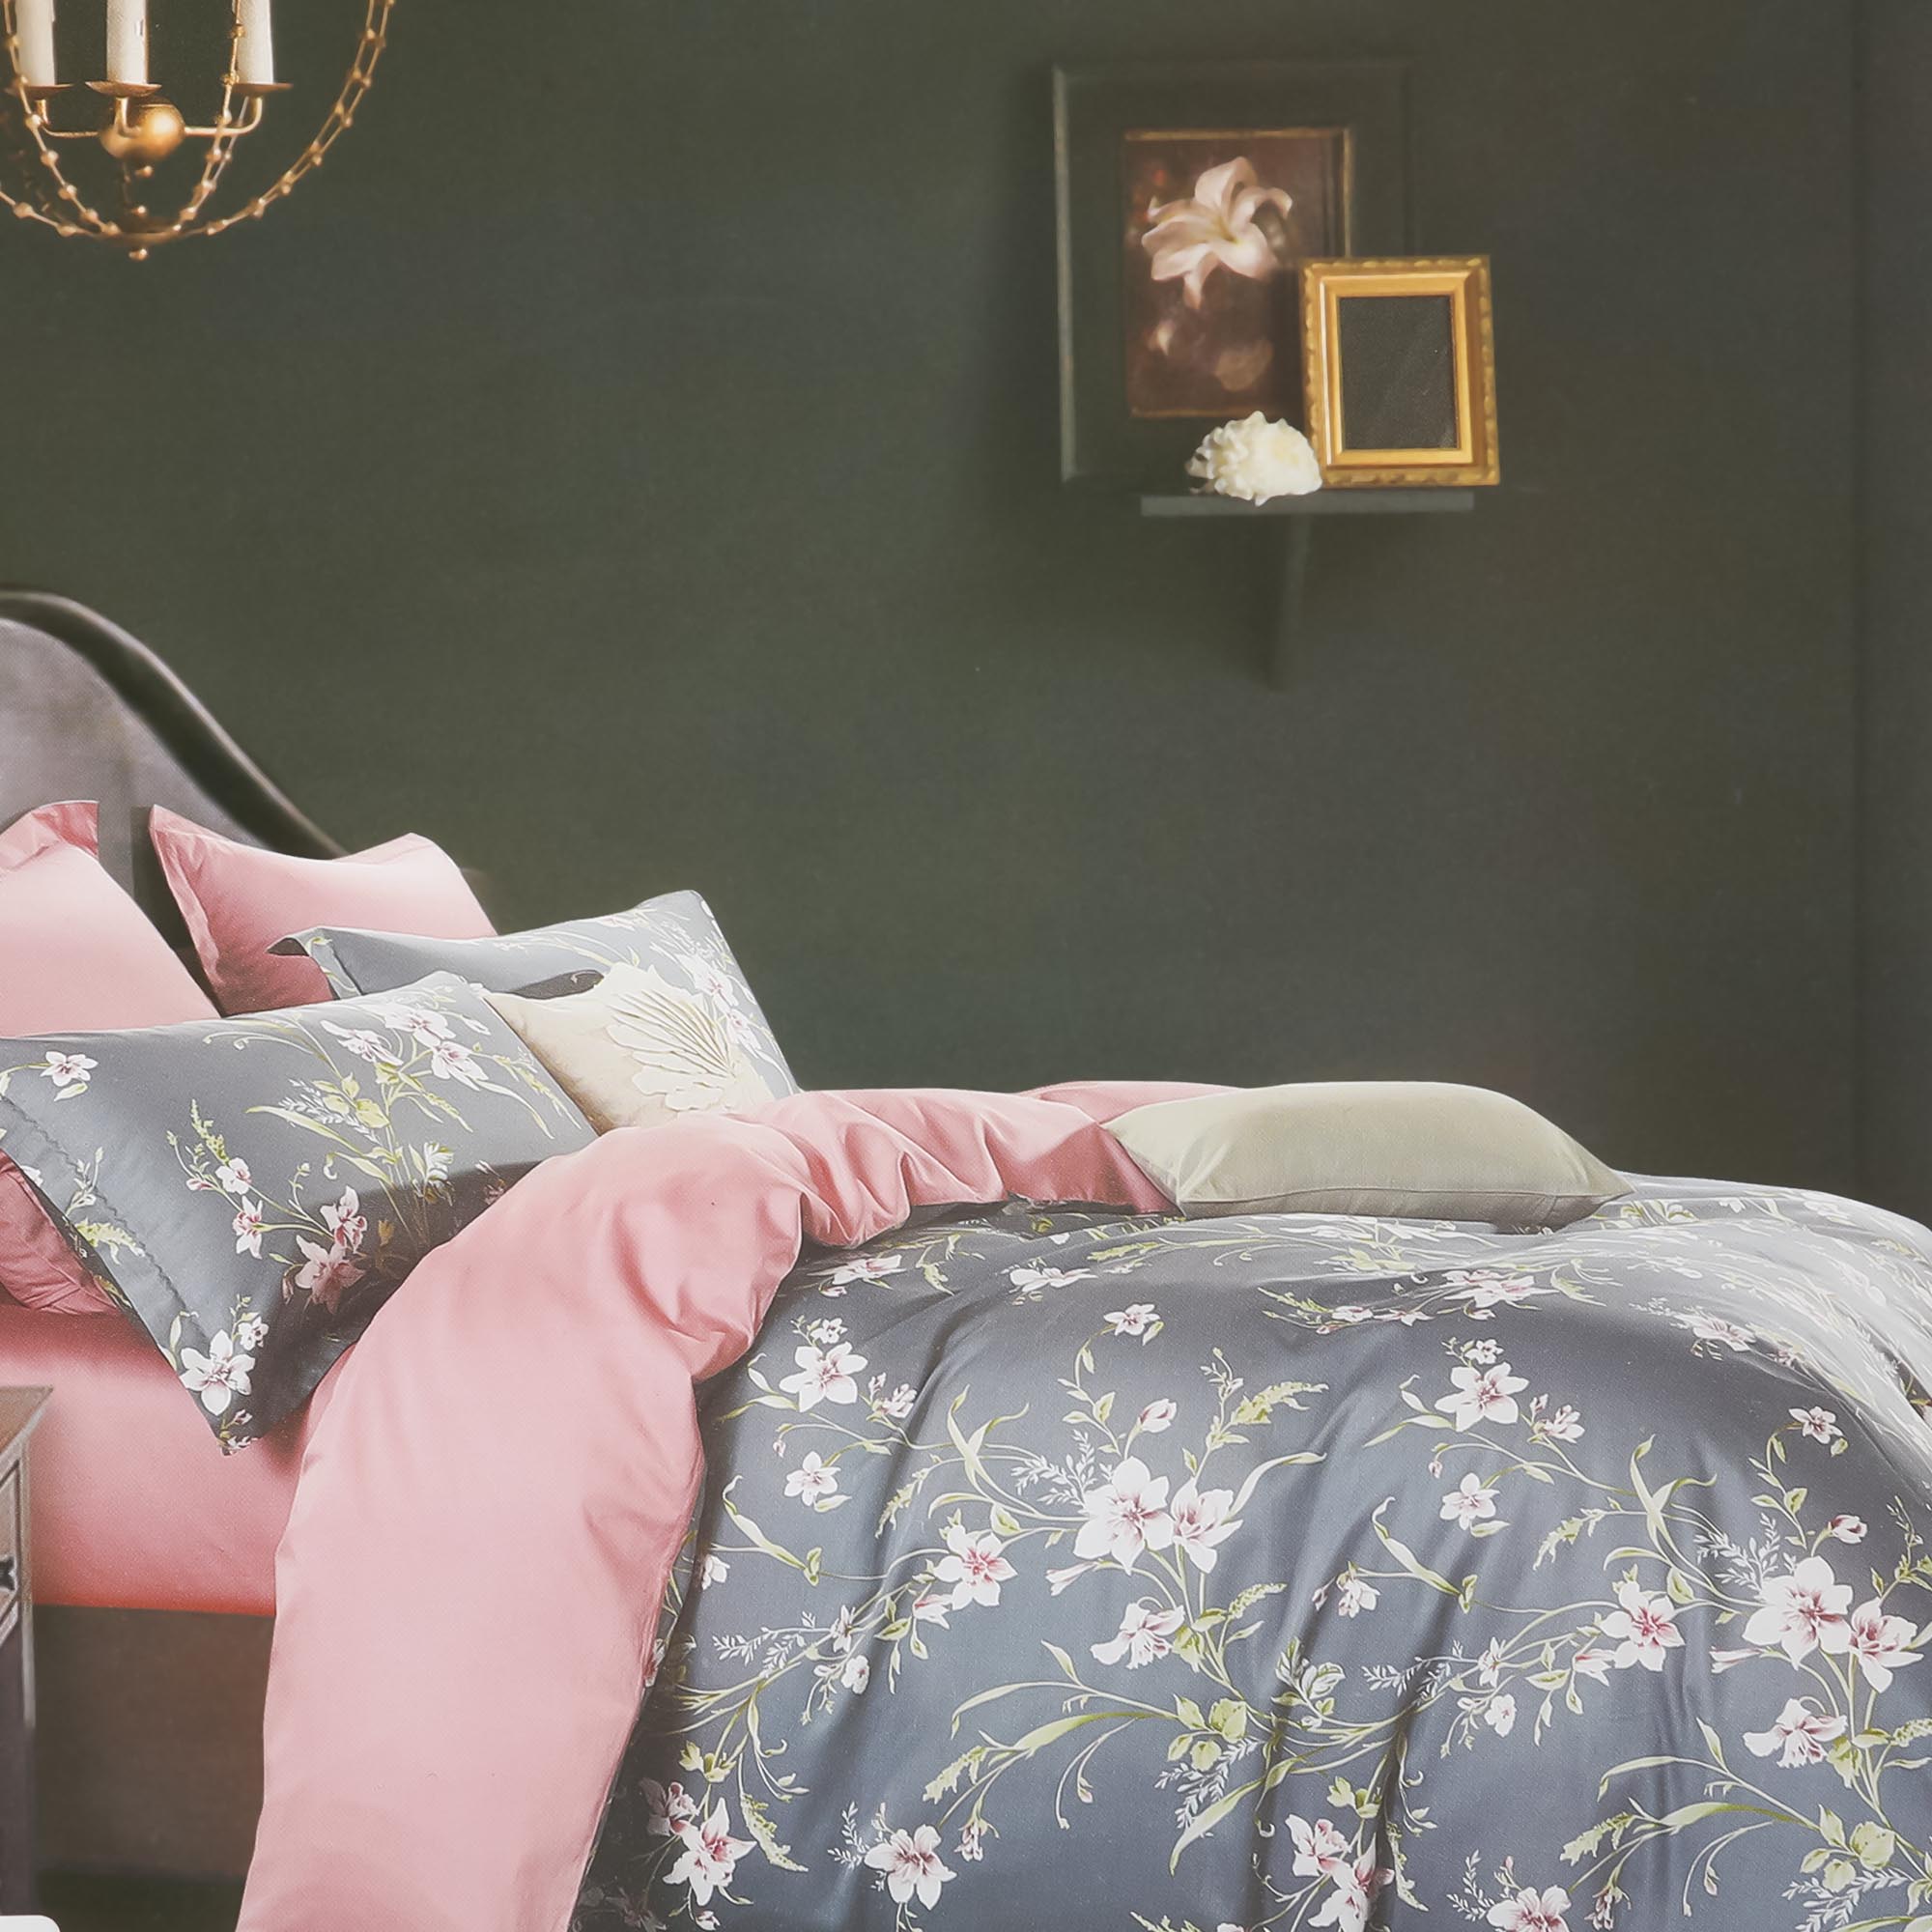 Постельный комплект Wonne Traum elegance viola двуспальный евро постельный комплект matteo bosio разноцветный двуспальный